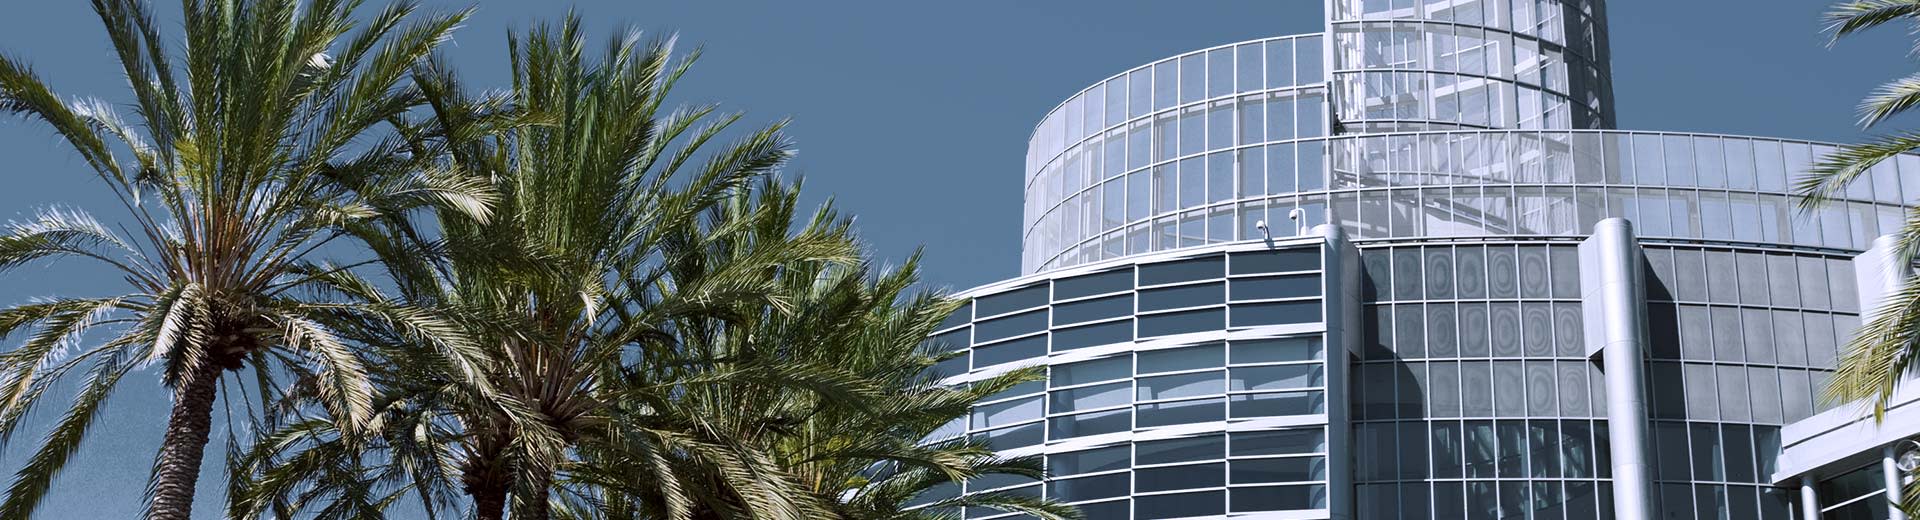 Ciel bleu en arrière-plan avec des palmiers typiques au premier plan. Un bâtiment se dresse à droite.